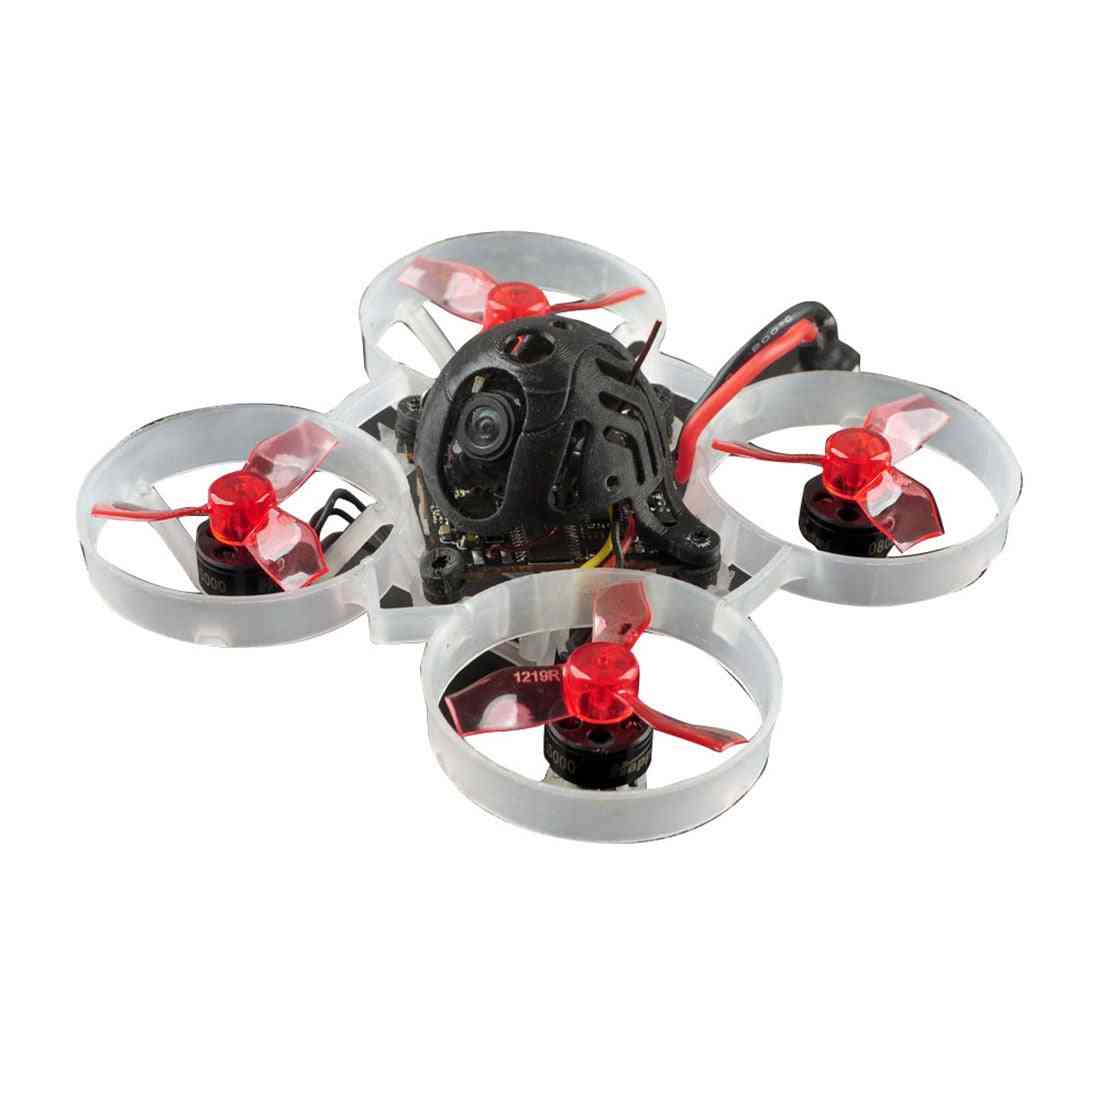 Trkaći dron s 4 u 1 - jednostavan za upotrebu